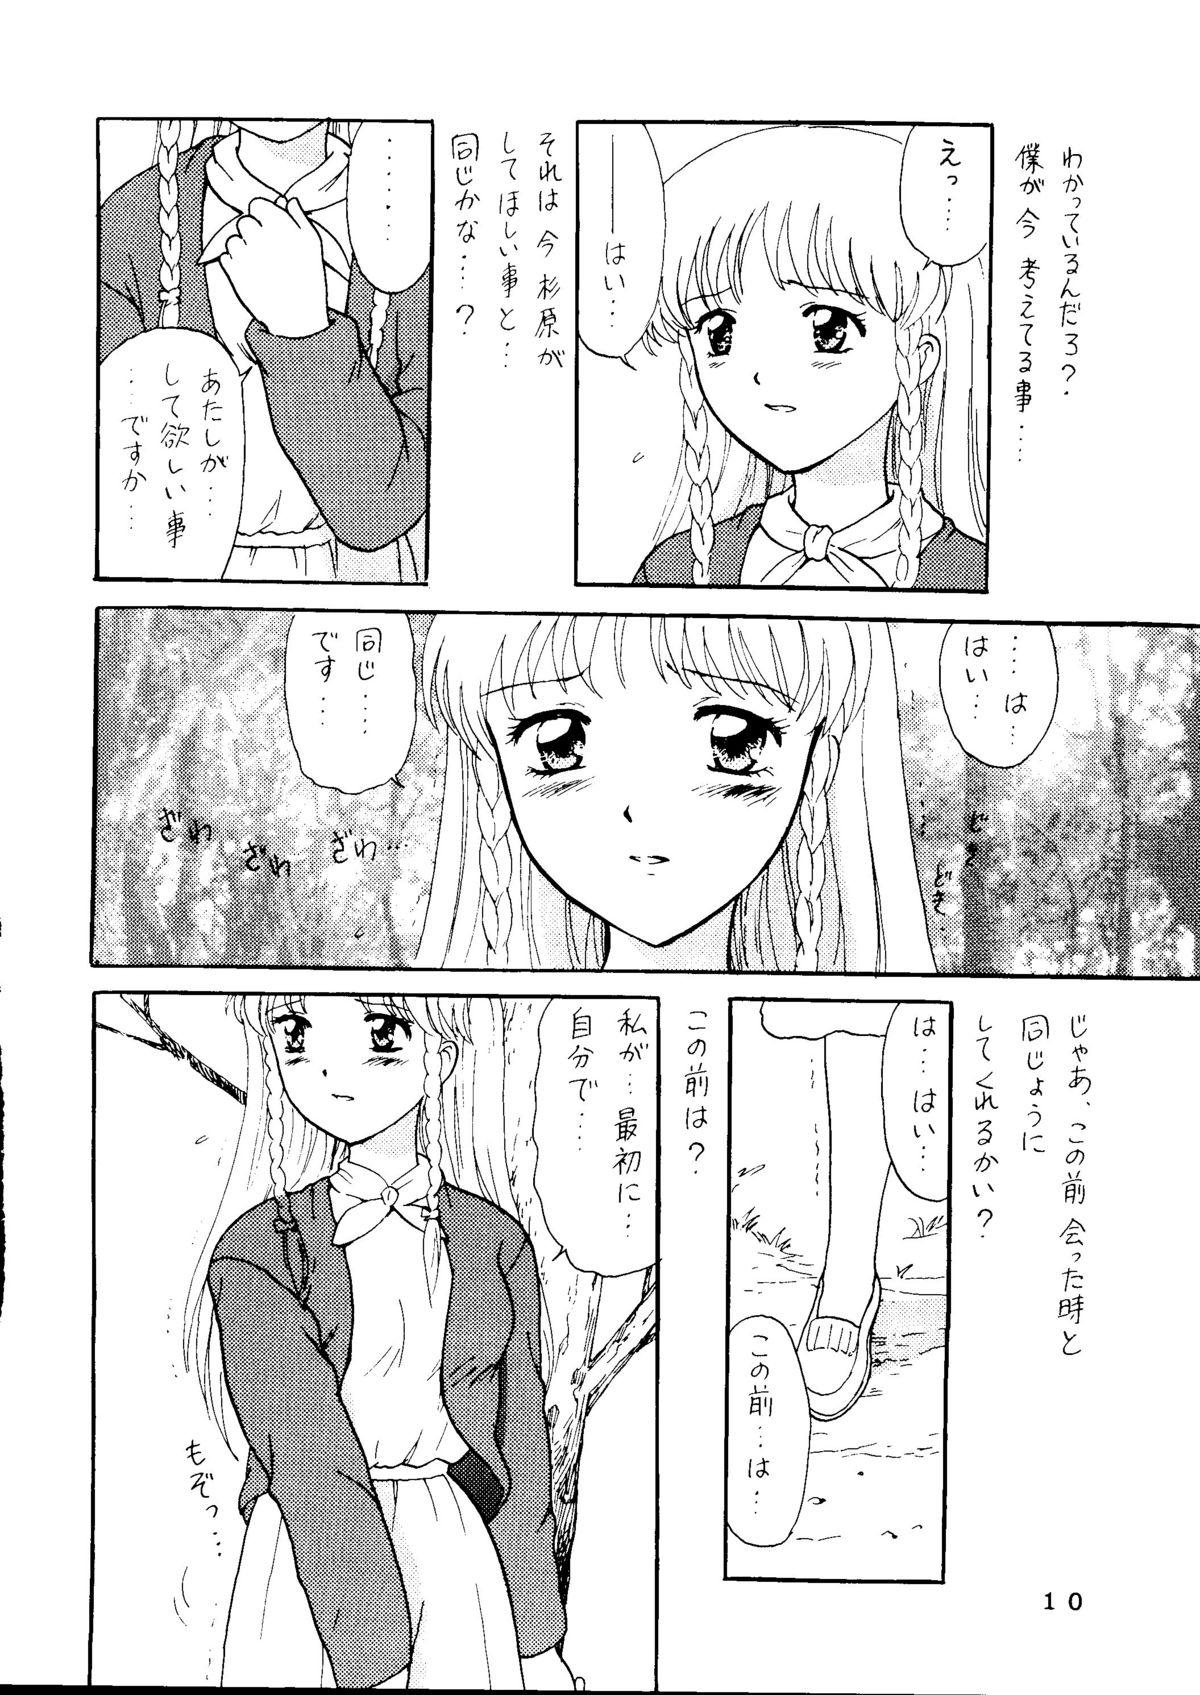 Shorts Sekai Seifuku Sailorfuku 14 - Sentimental graffiti Boss - Page 5